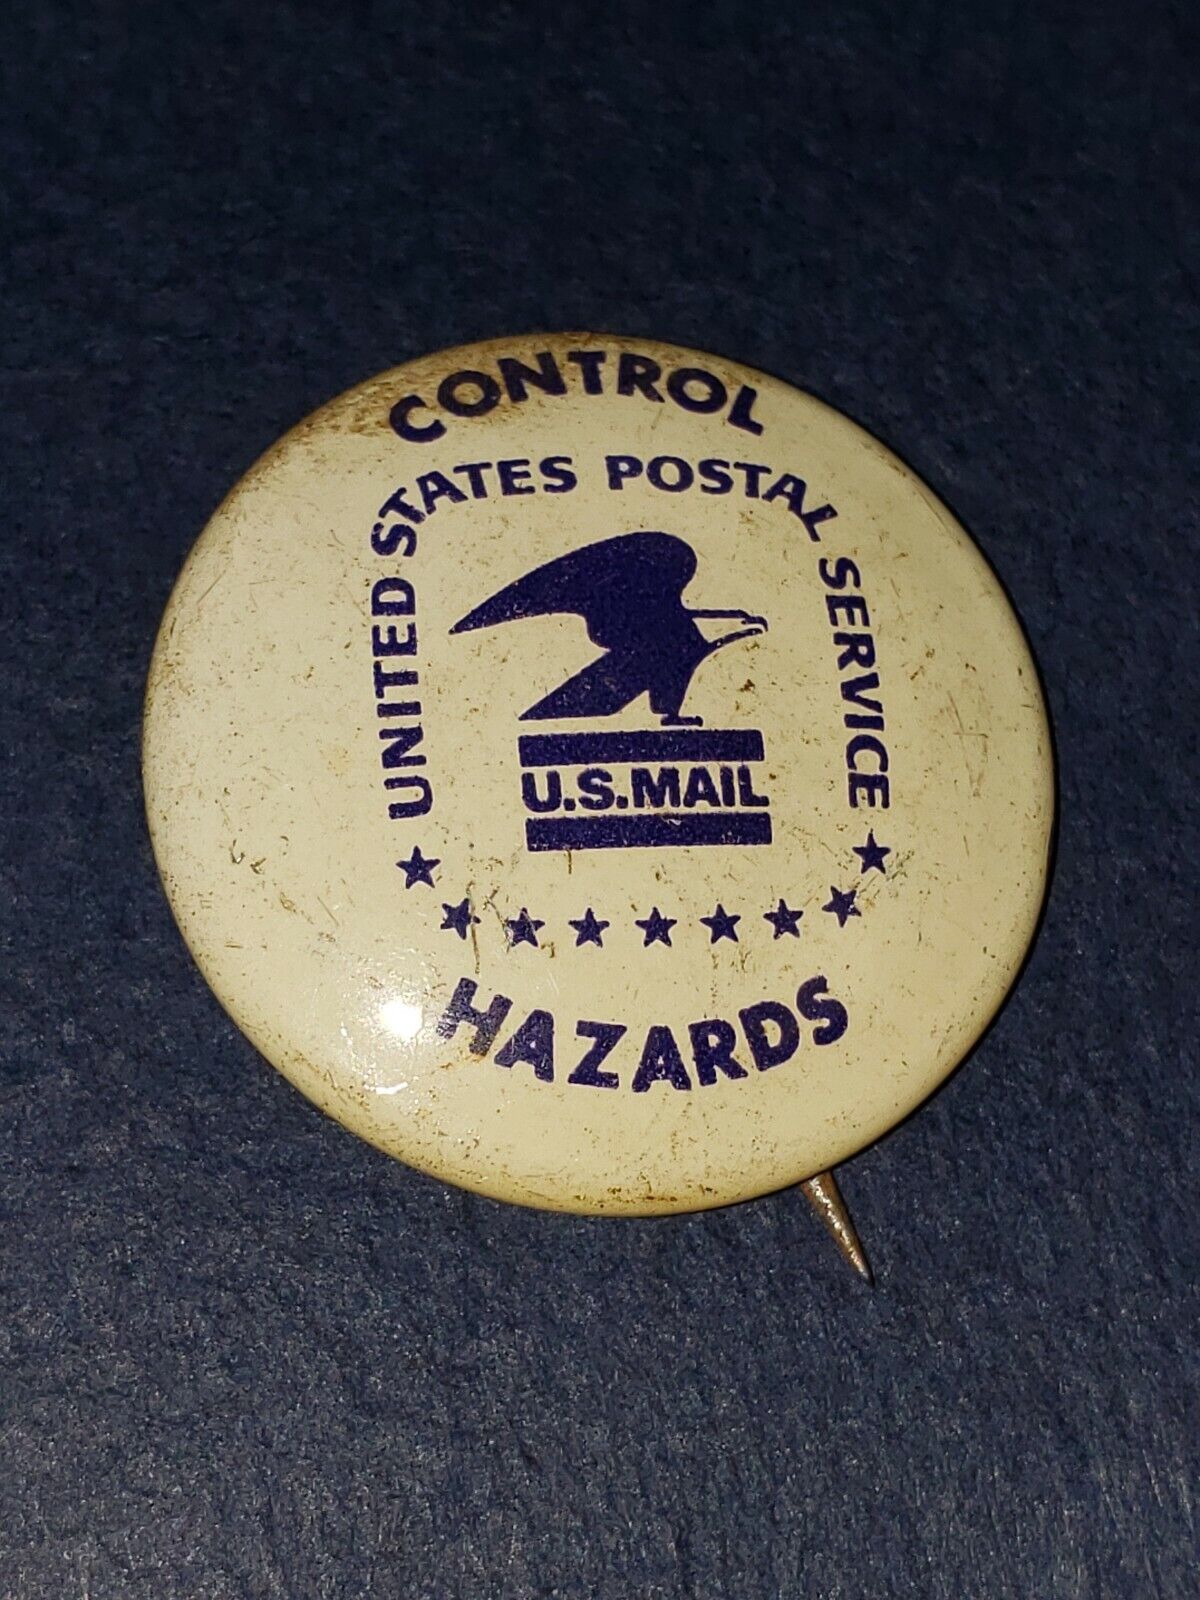 VINTAGE- USPS Control Hazards  U.S Mail Pinback Metal Pin badge